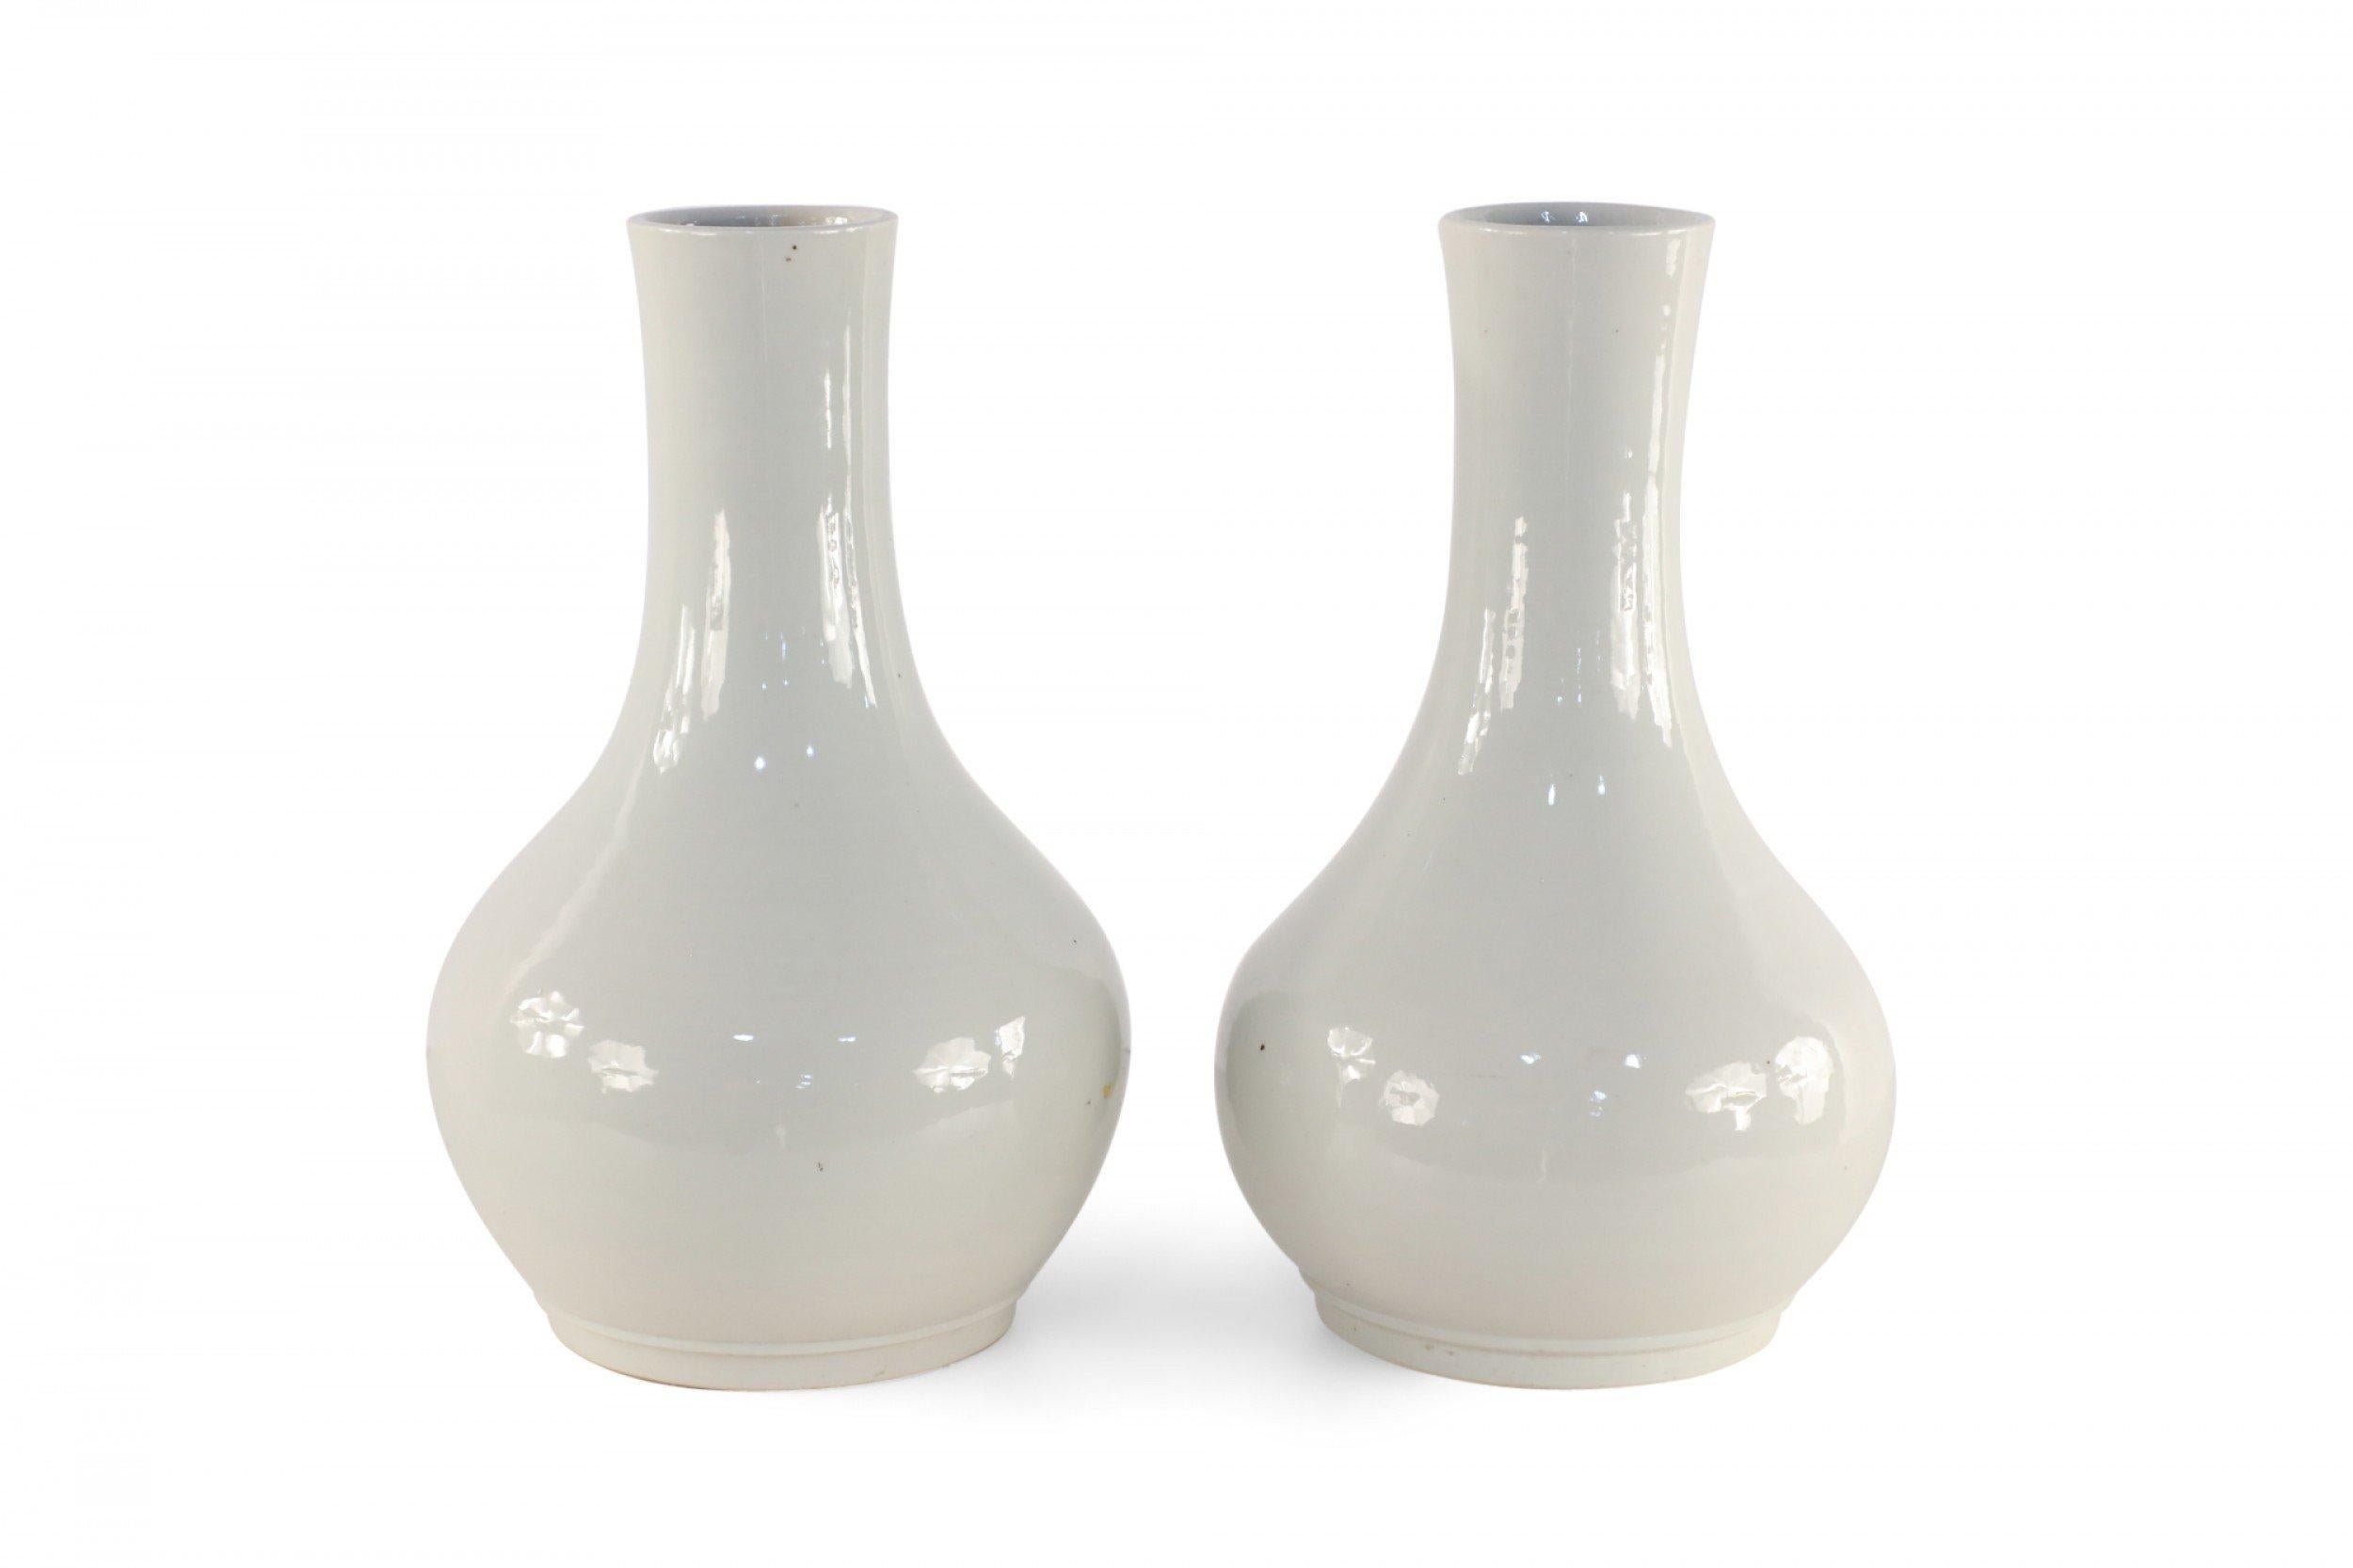 Paire de vases similaires en porcelaine chinoise aux formes globulaires dans des teintes gris pâle avec des finitions émaillées (les vases varient légèrement en forme) (PRIX DE LA PAIRE).
 